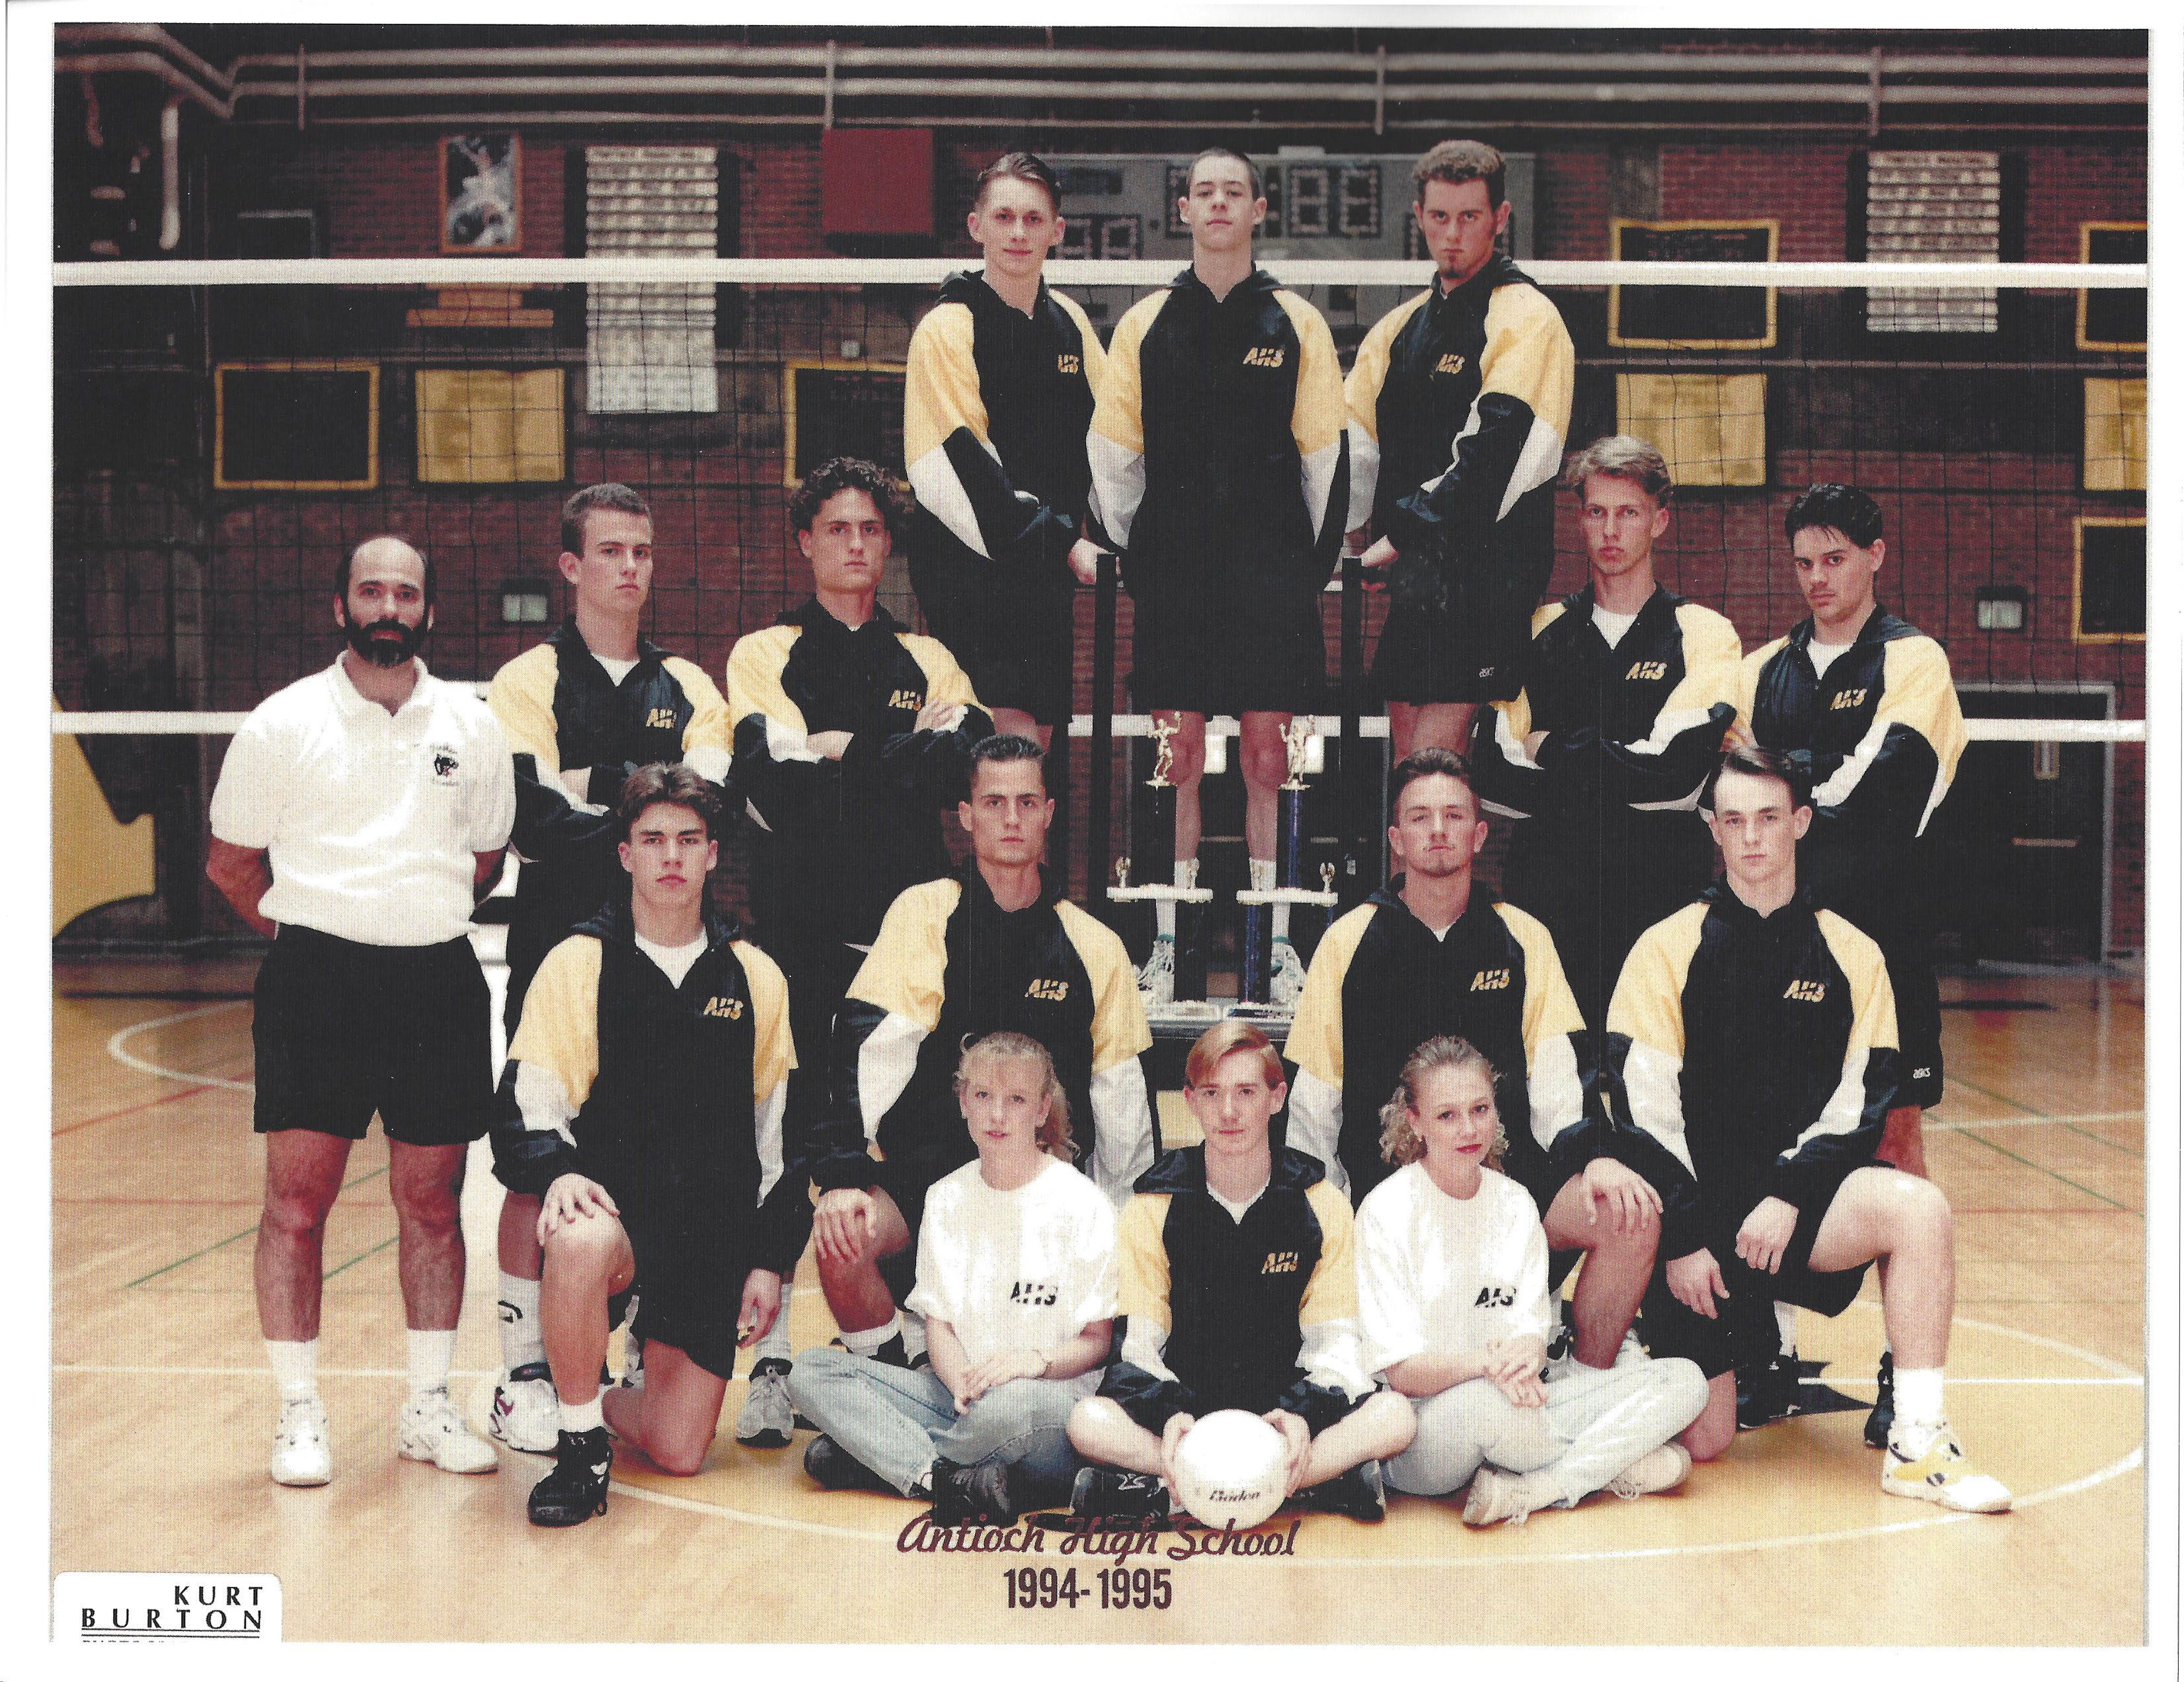 1994-1995 Antioch High School Boys' Volleyball Team